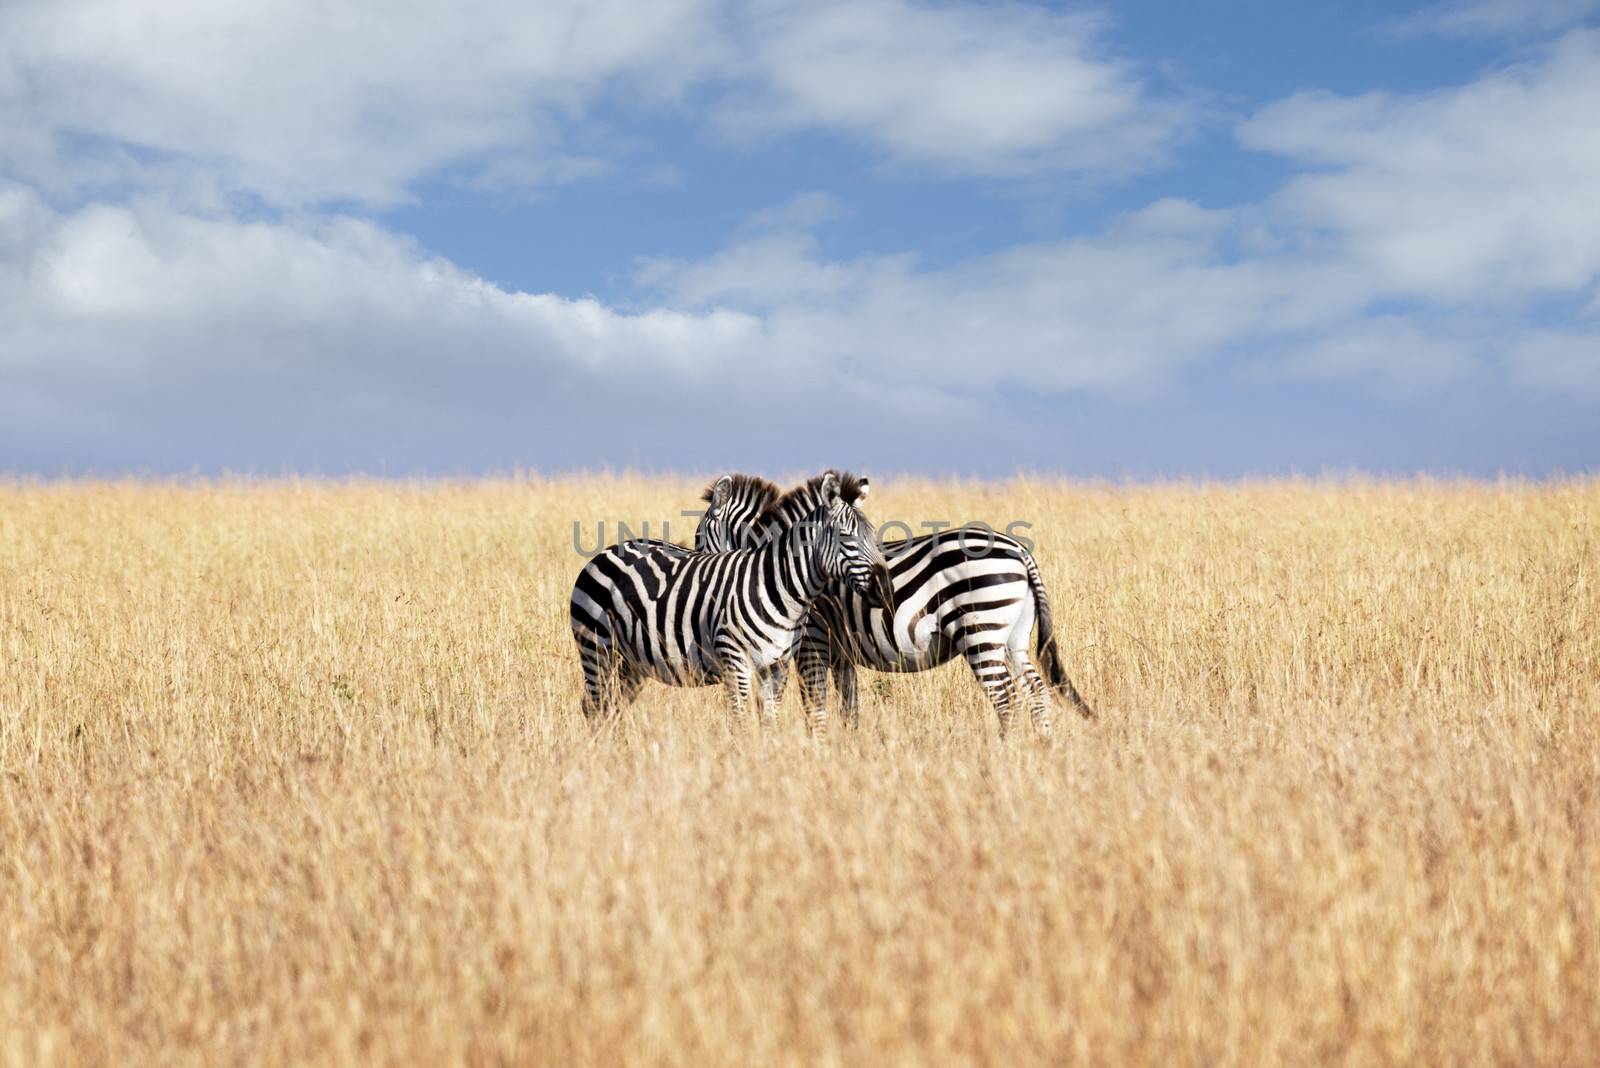 Small herd of Grant's zebras  in savannah of Masai Mara National Reserve, Kenya